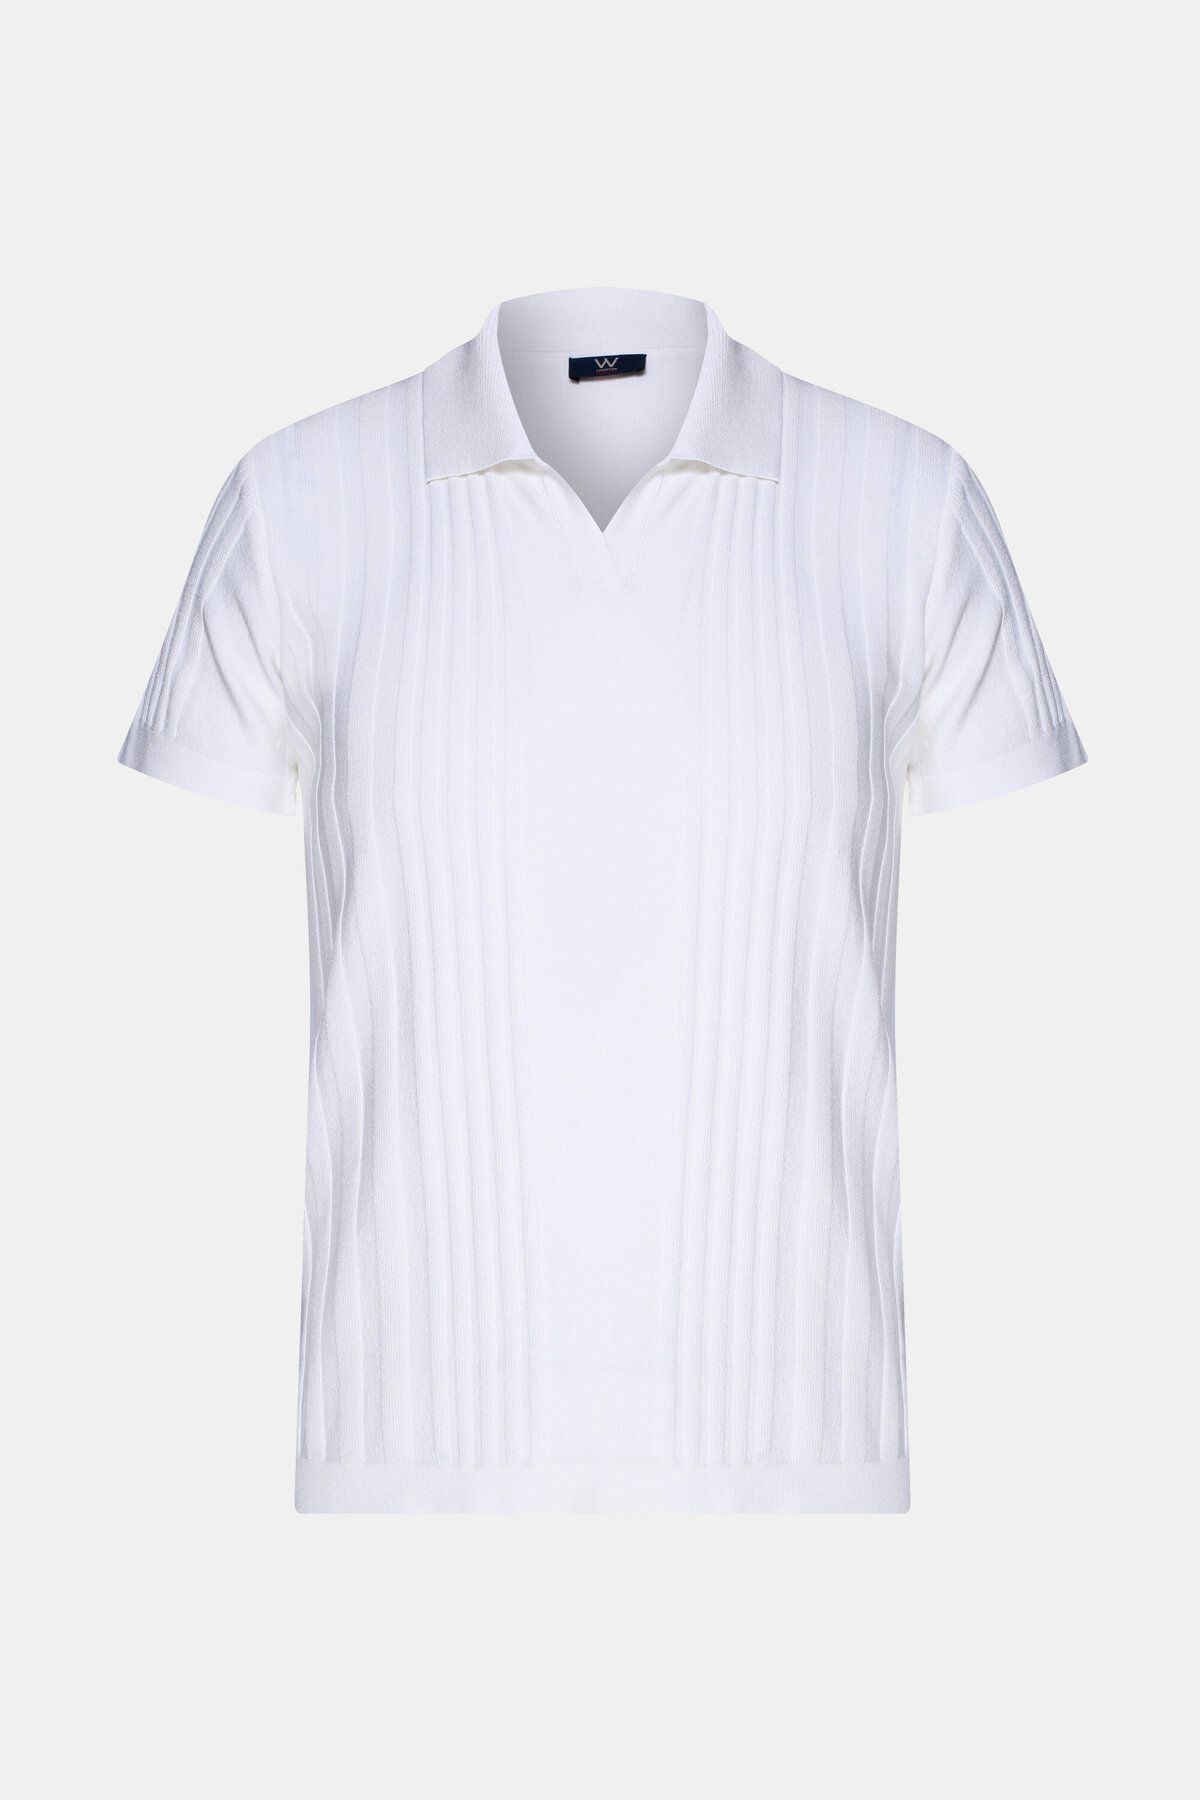 W Collection Beyaz Polo Yaka T-shirt